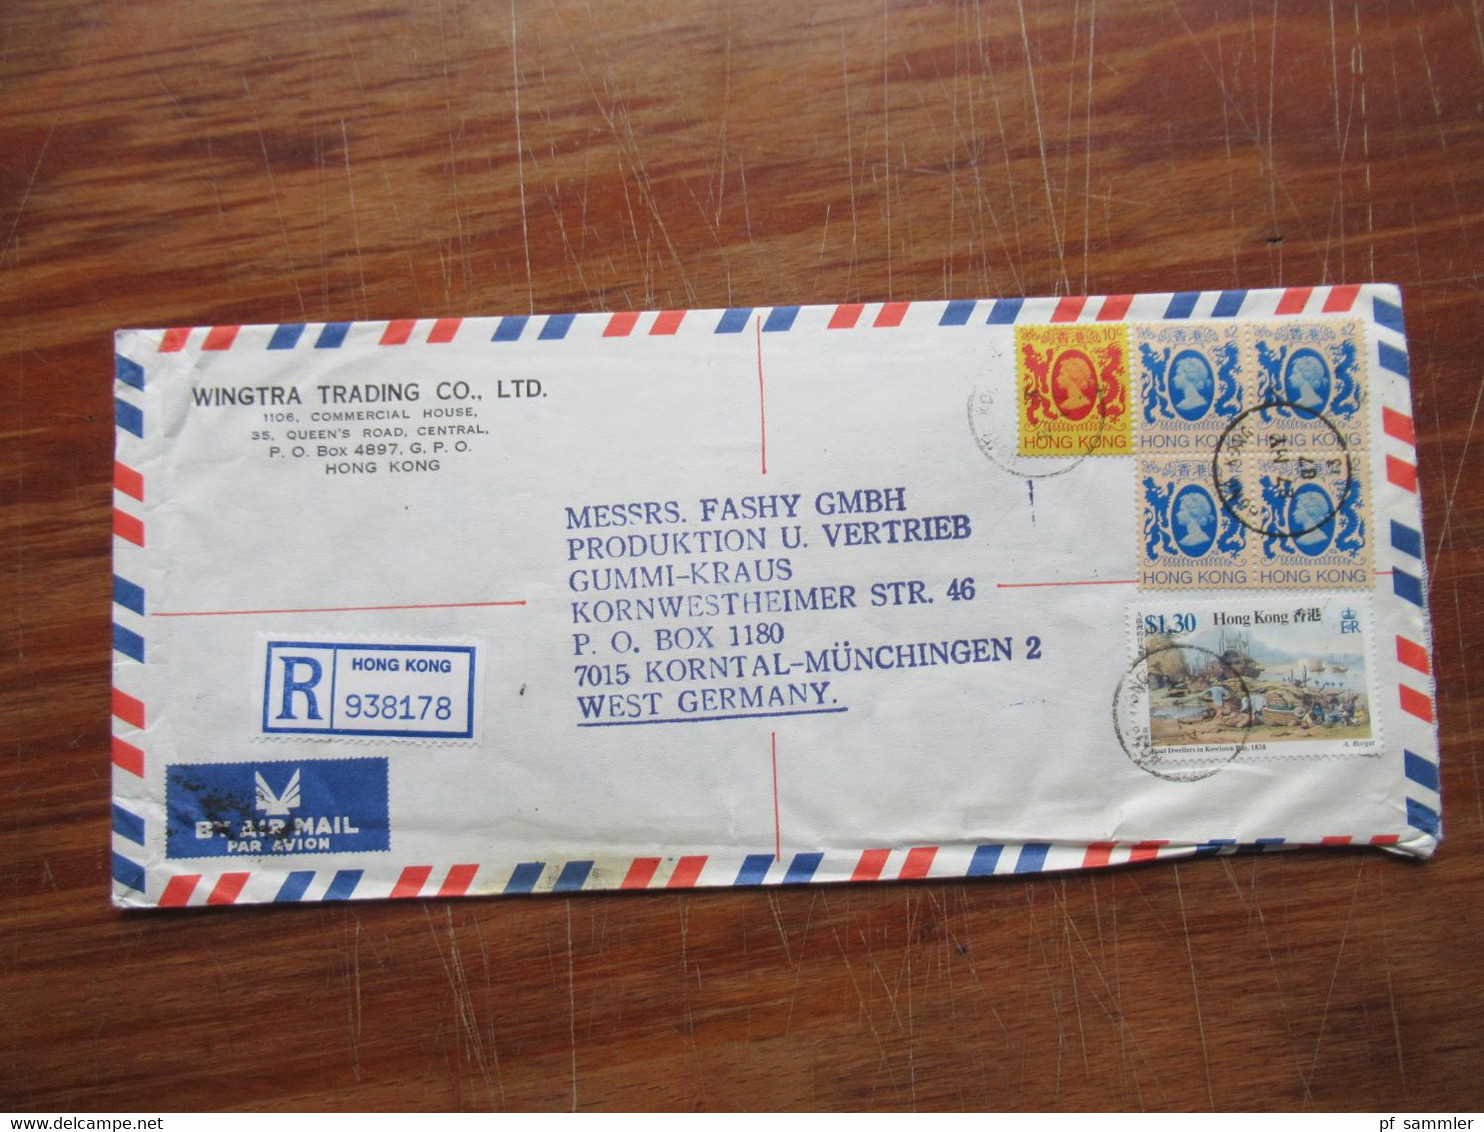 Asien 1986 GB Kolonie Hong Kong 1986 2x Firmen Belege Registered / Express Mit Hohen Frankaturen! - Cartas & Documentos